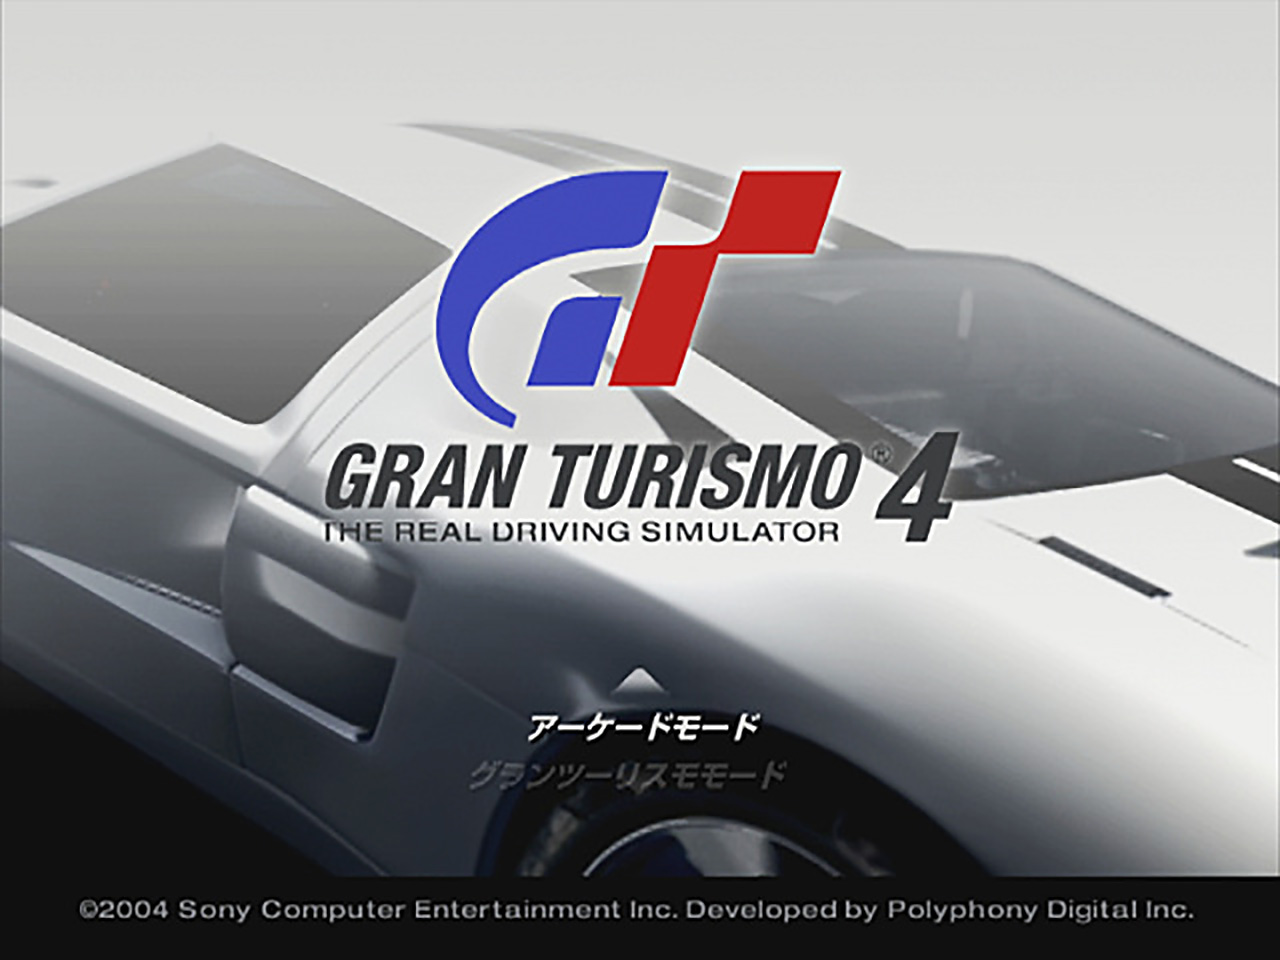 GRAN TURISMO 4 - PS3 